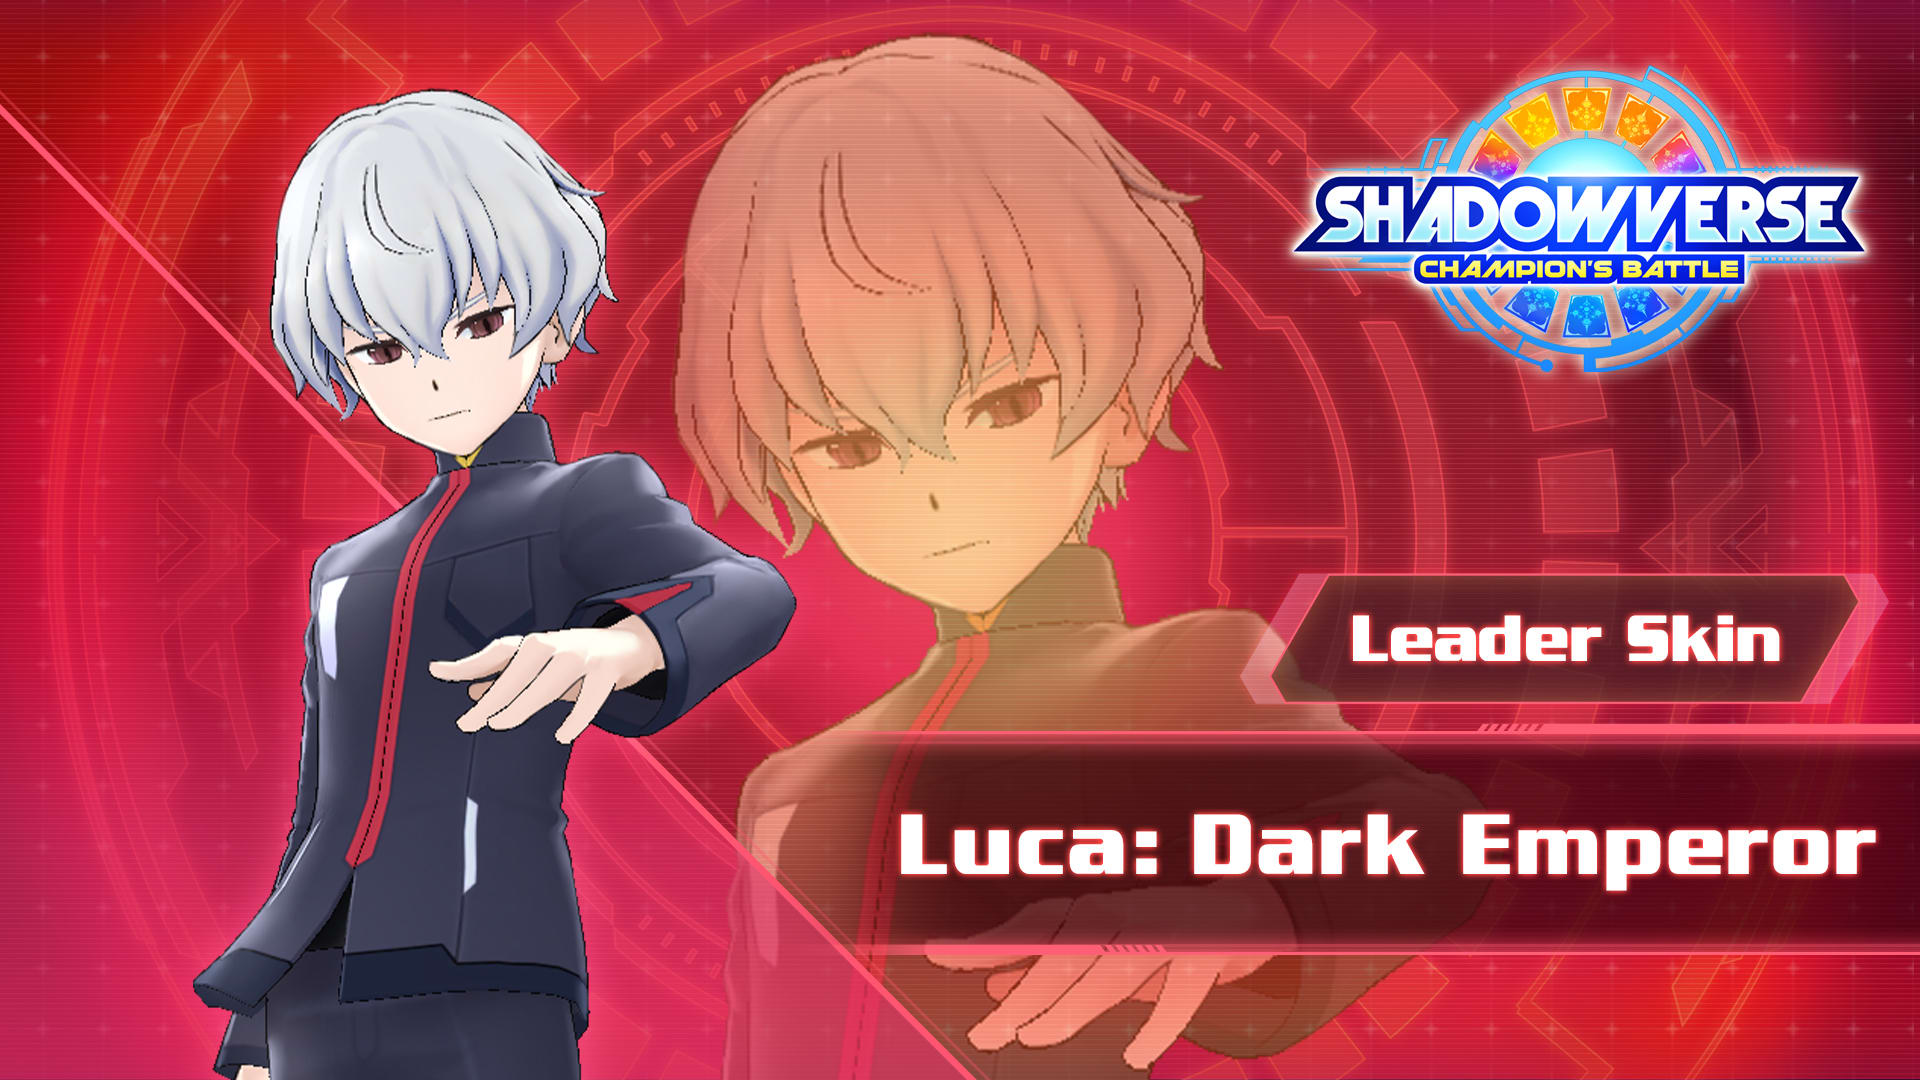 Leader Skin: "Luca: Dark Emperor"